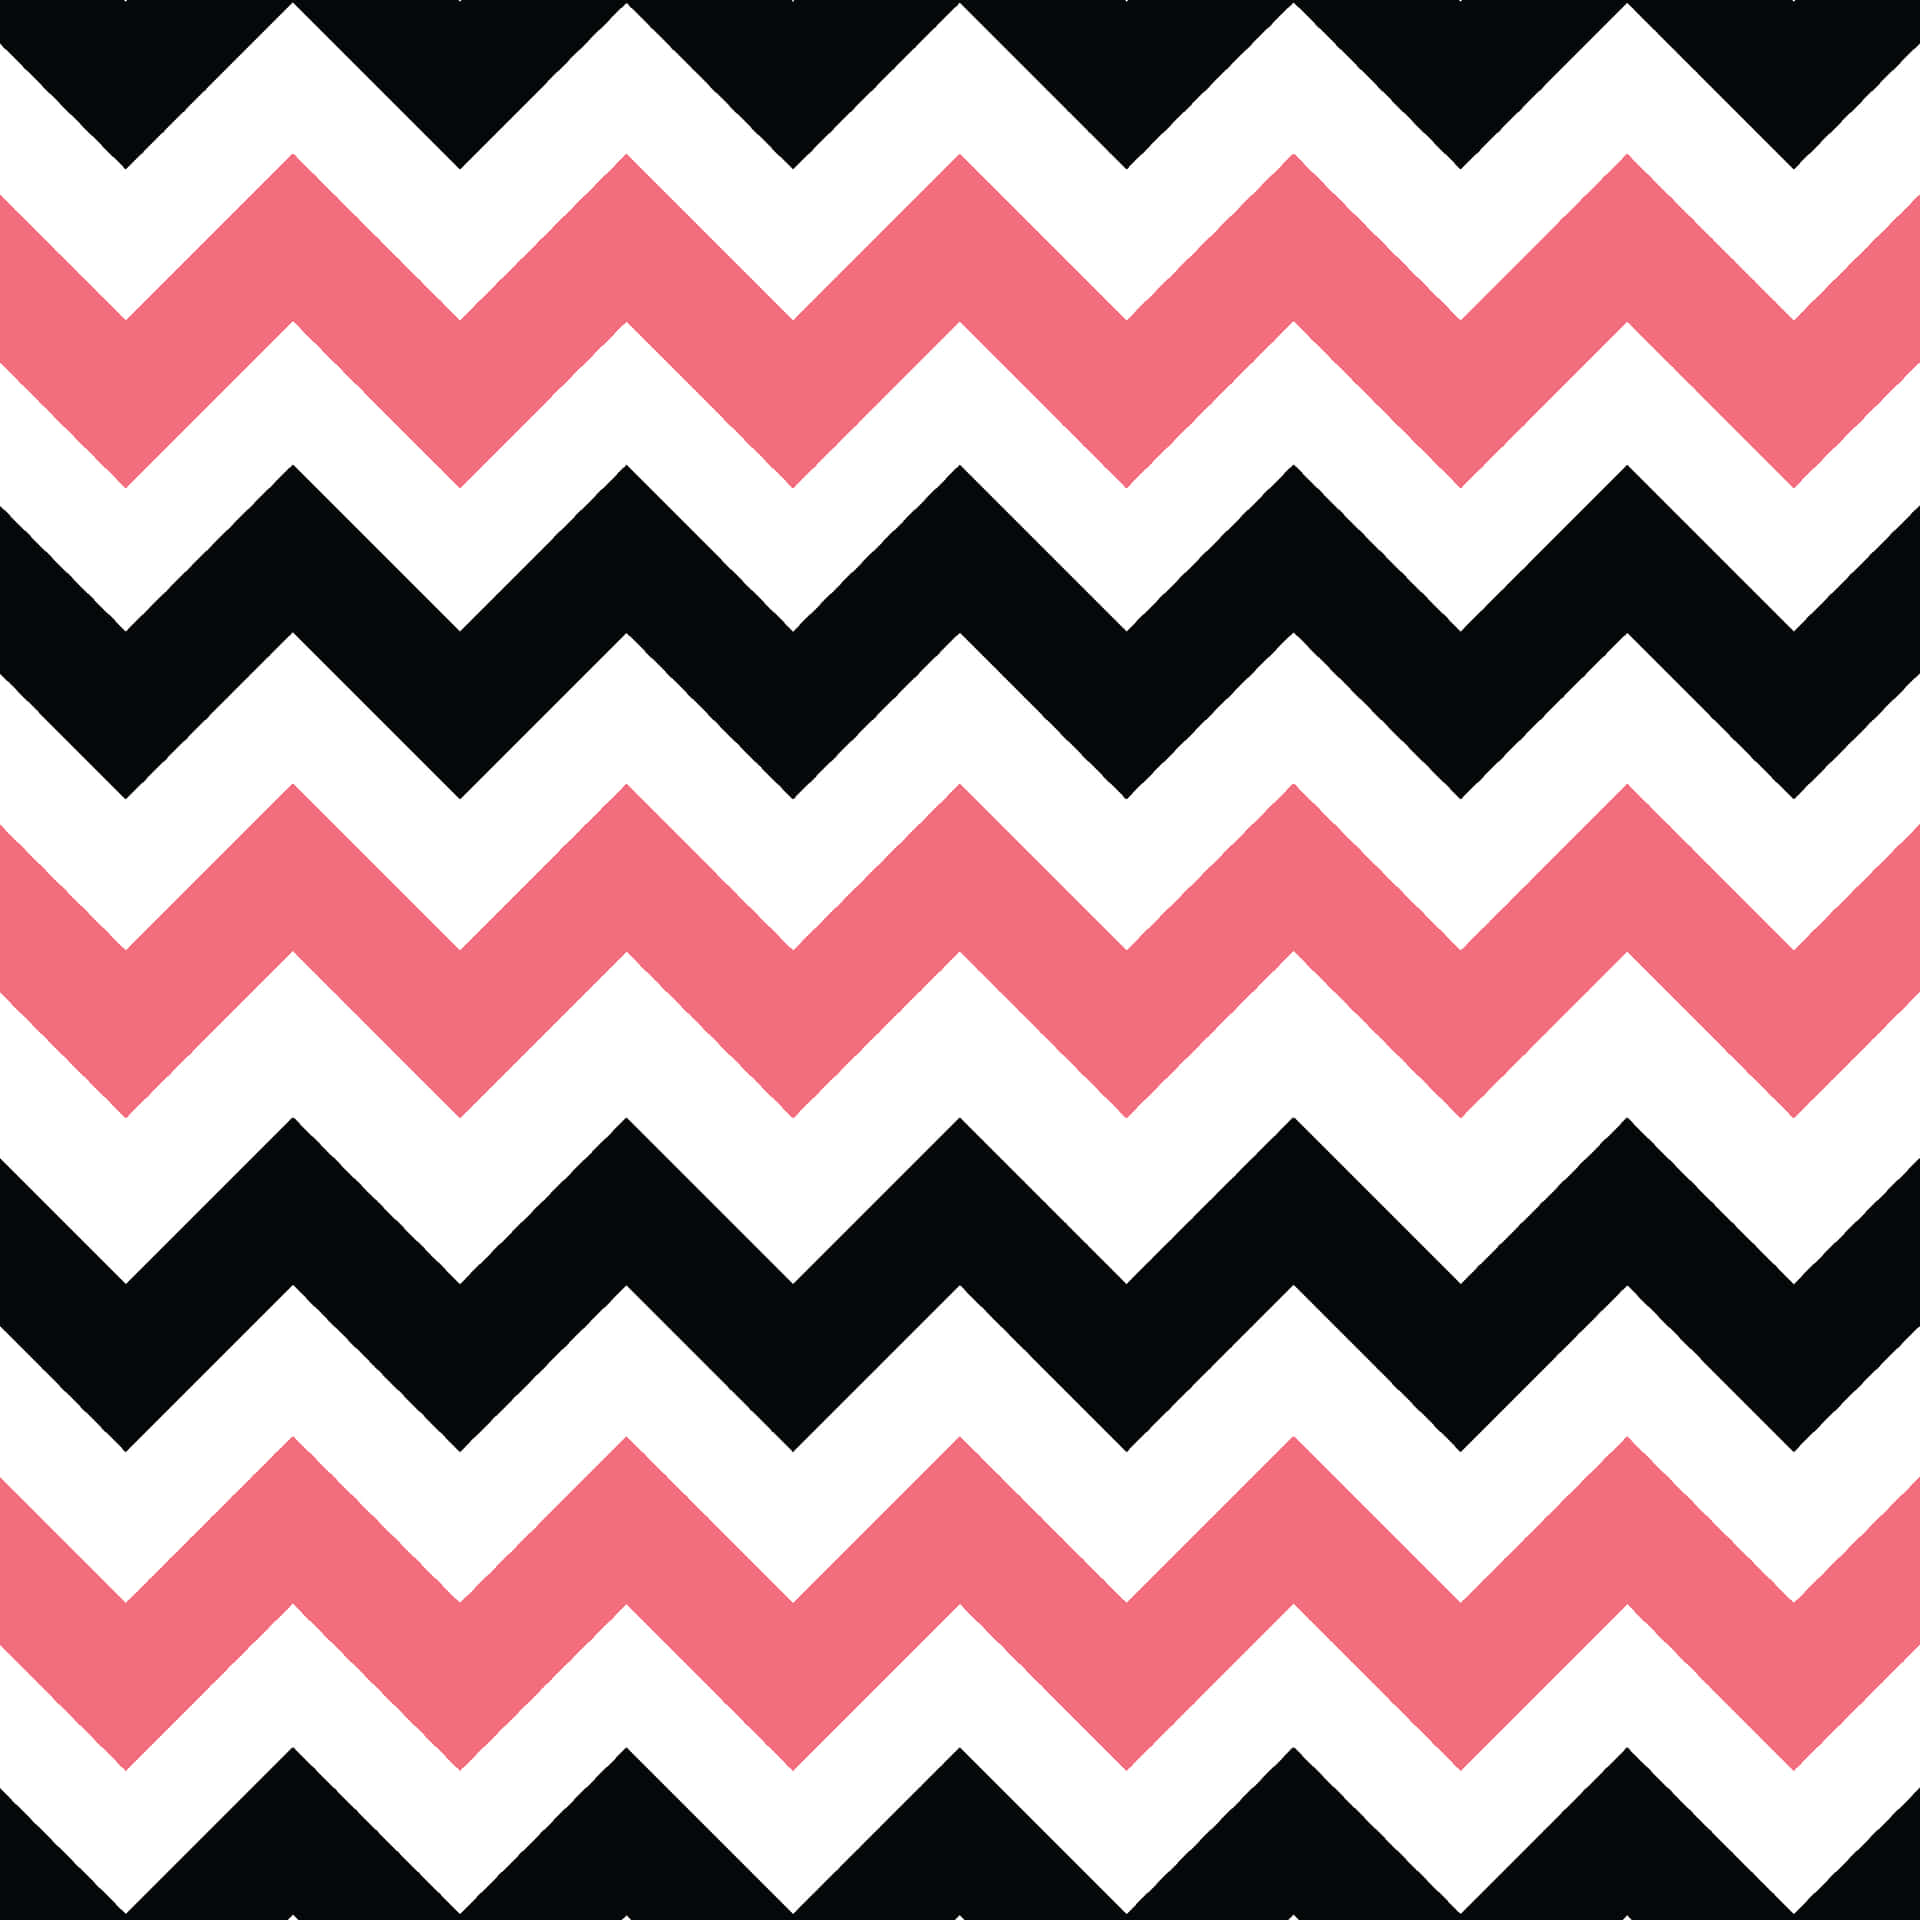 Abstrakt geometrisk mønster i pink, sort og hvid. Wallpaper